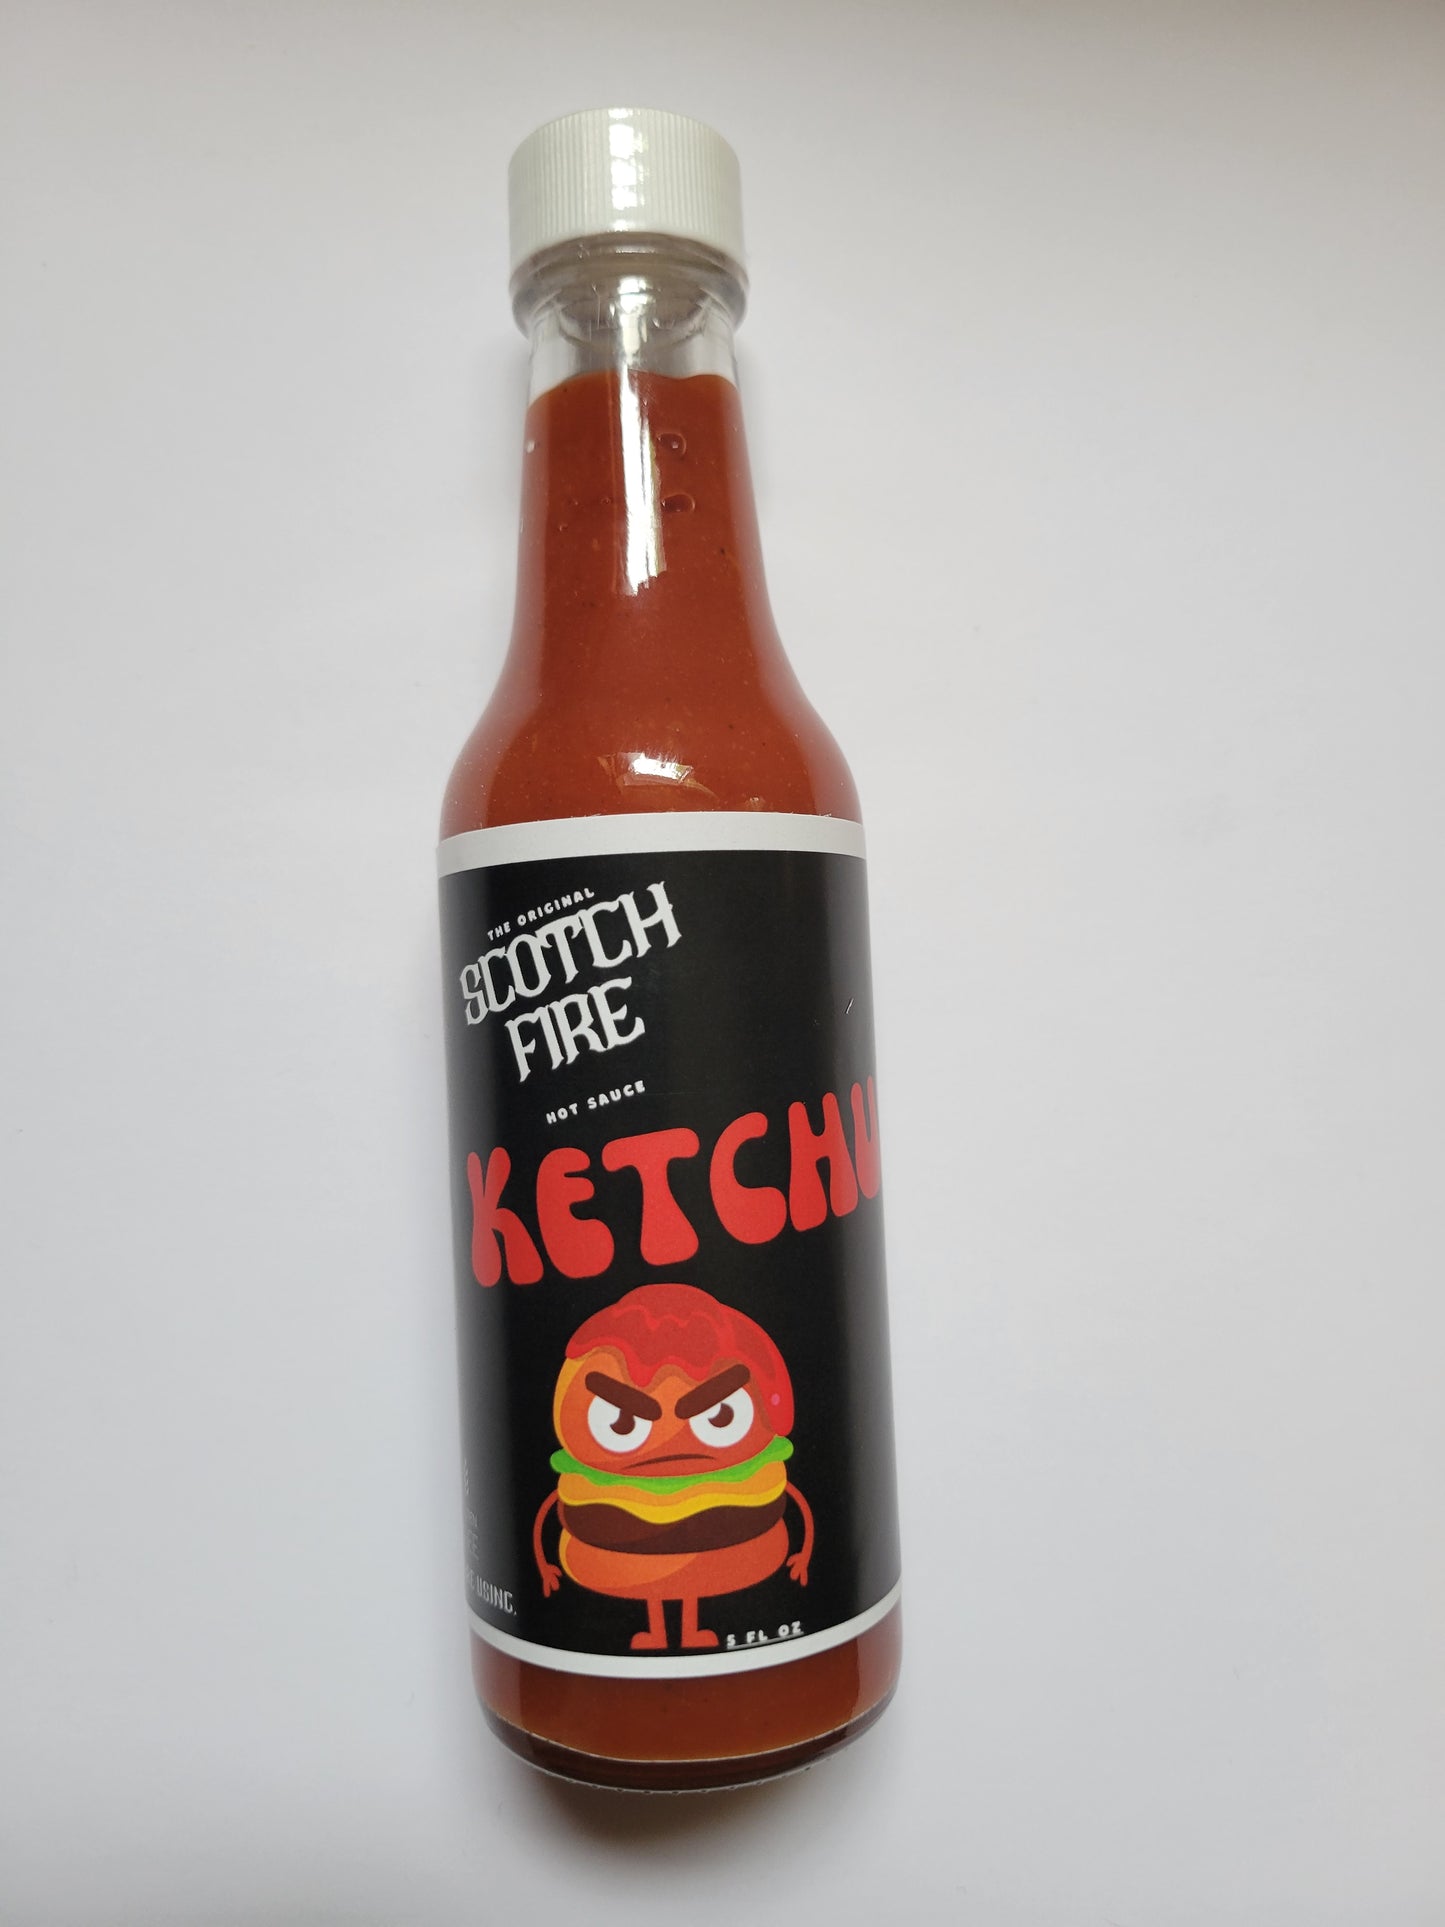 Scotch Fire Ketchup